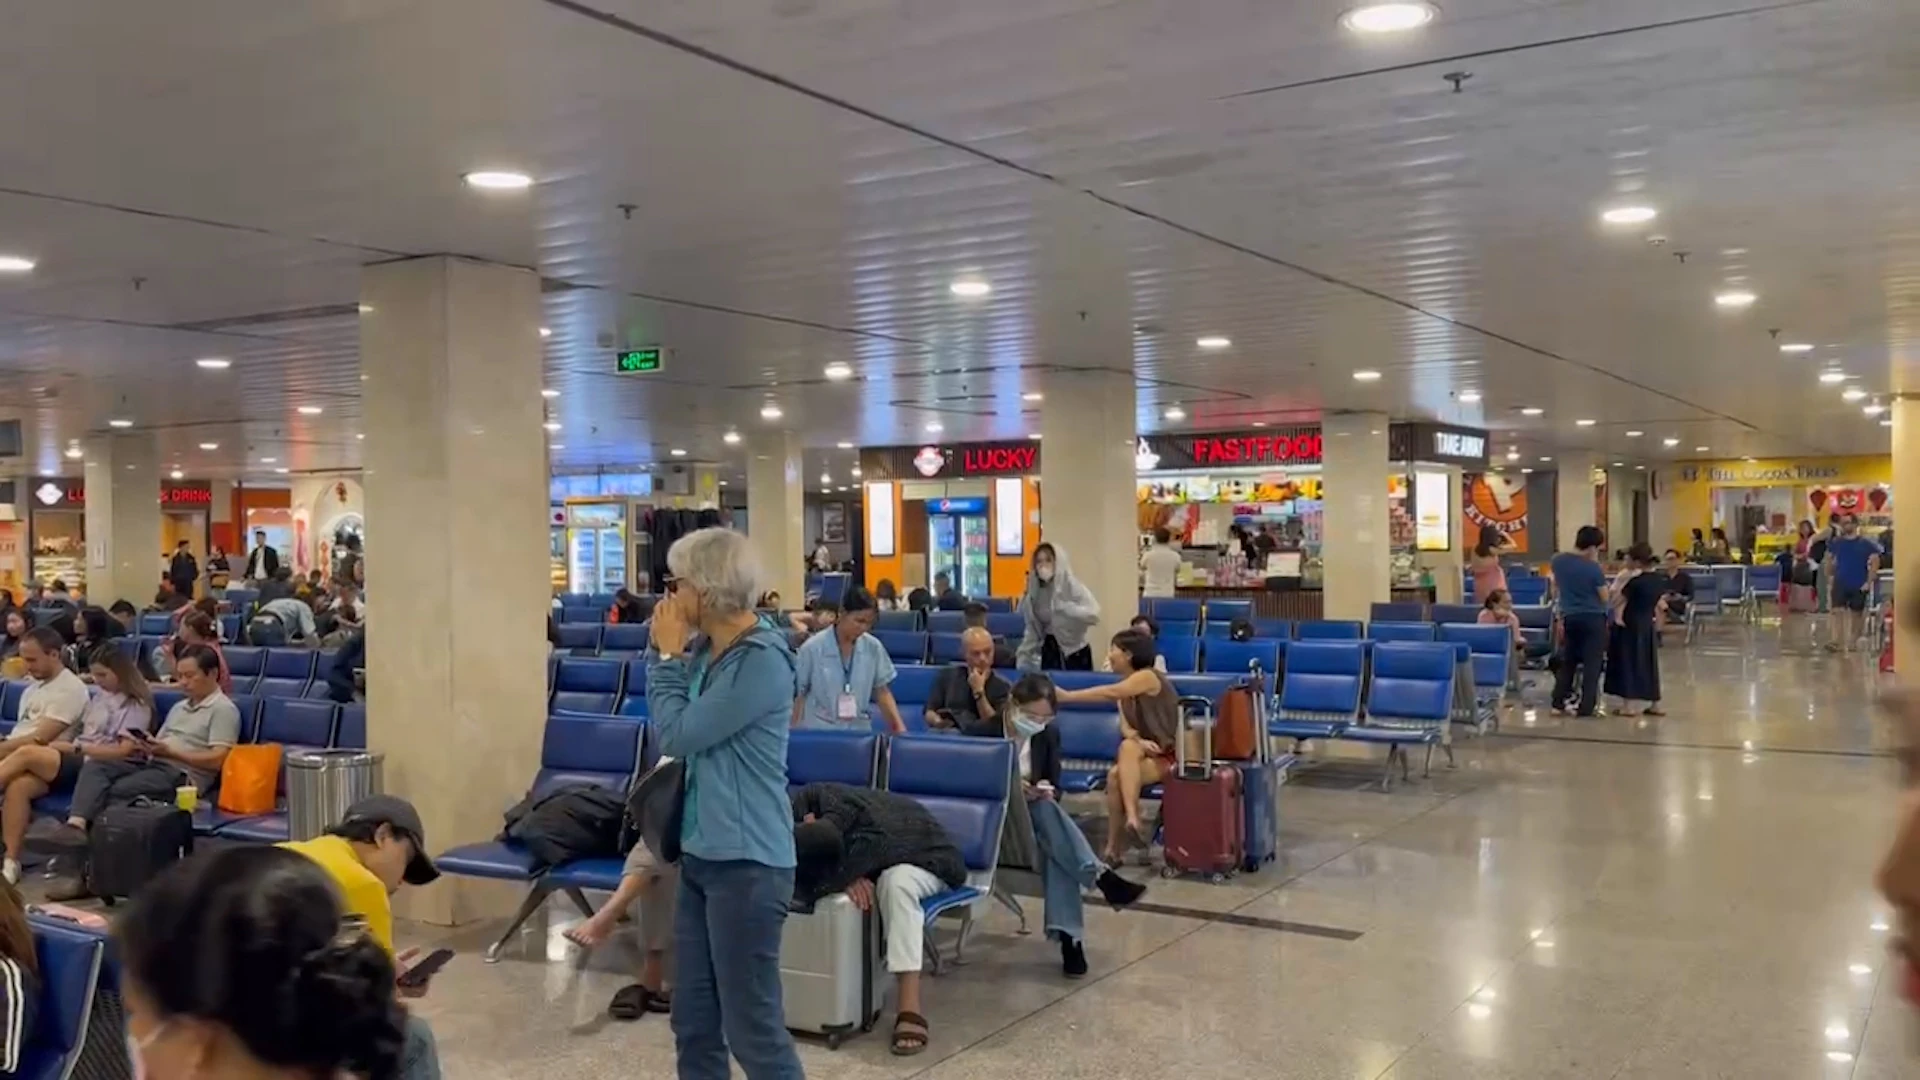 Ngày 30 tết: Sân bay Tân Sơn Nhất chỉ như ngày thường, sân bay Nội Bài lác đác khách đi